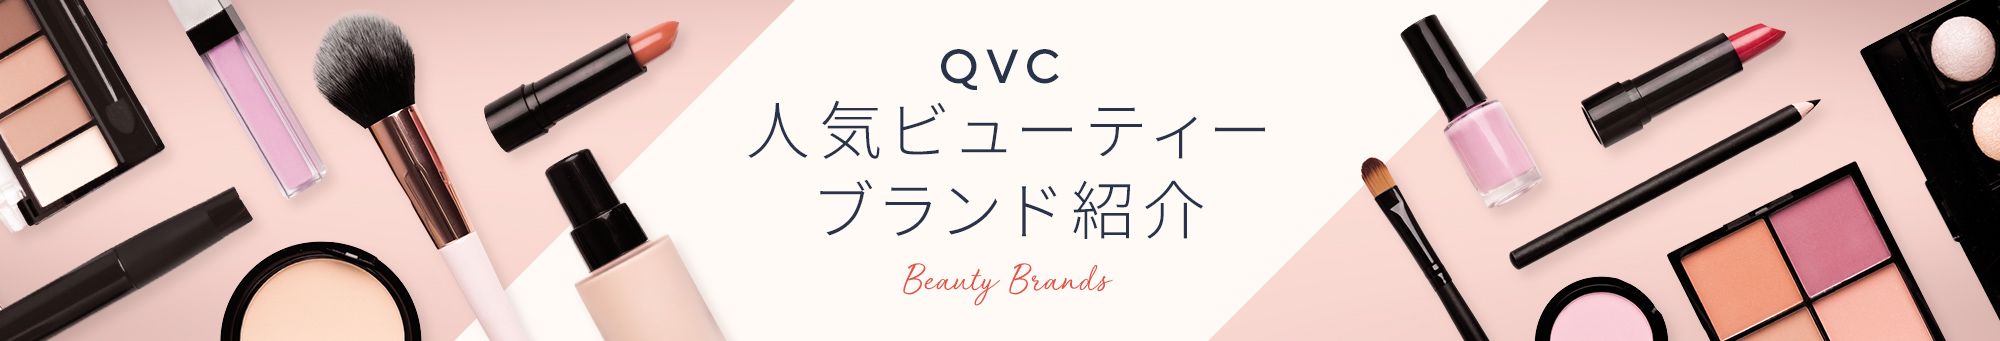 QVC人気ビューティーブランド紹介